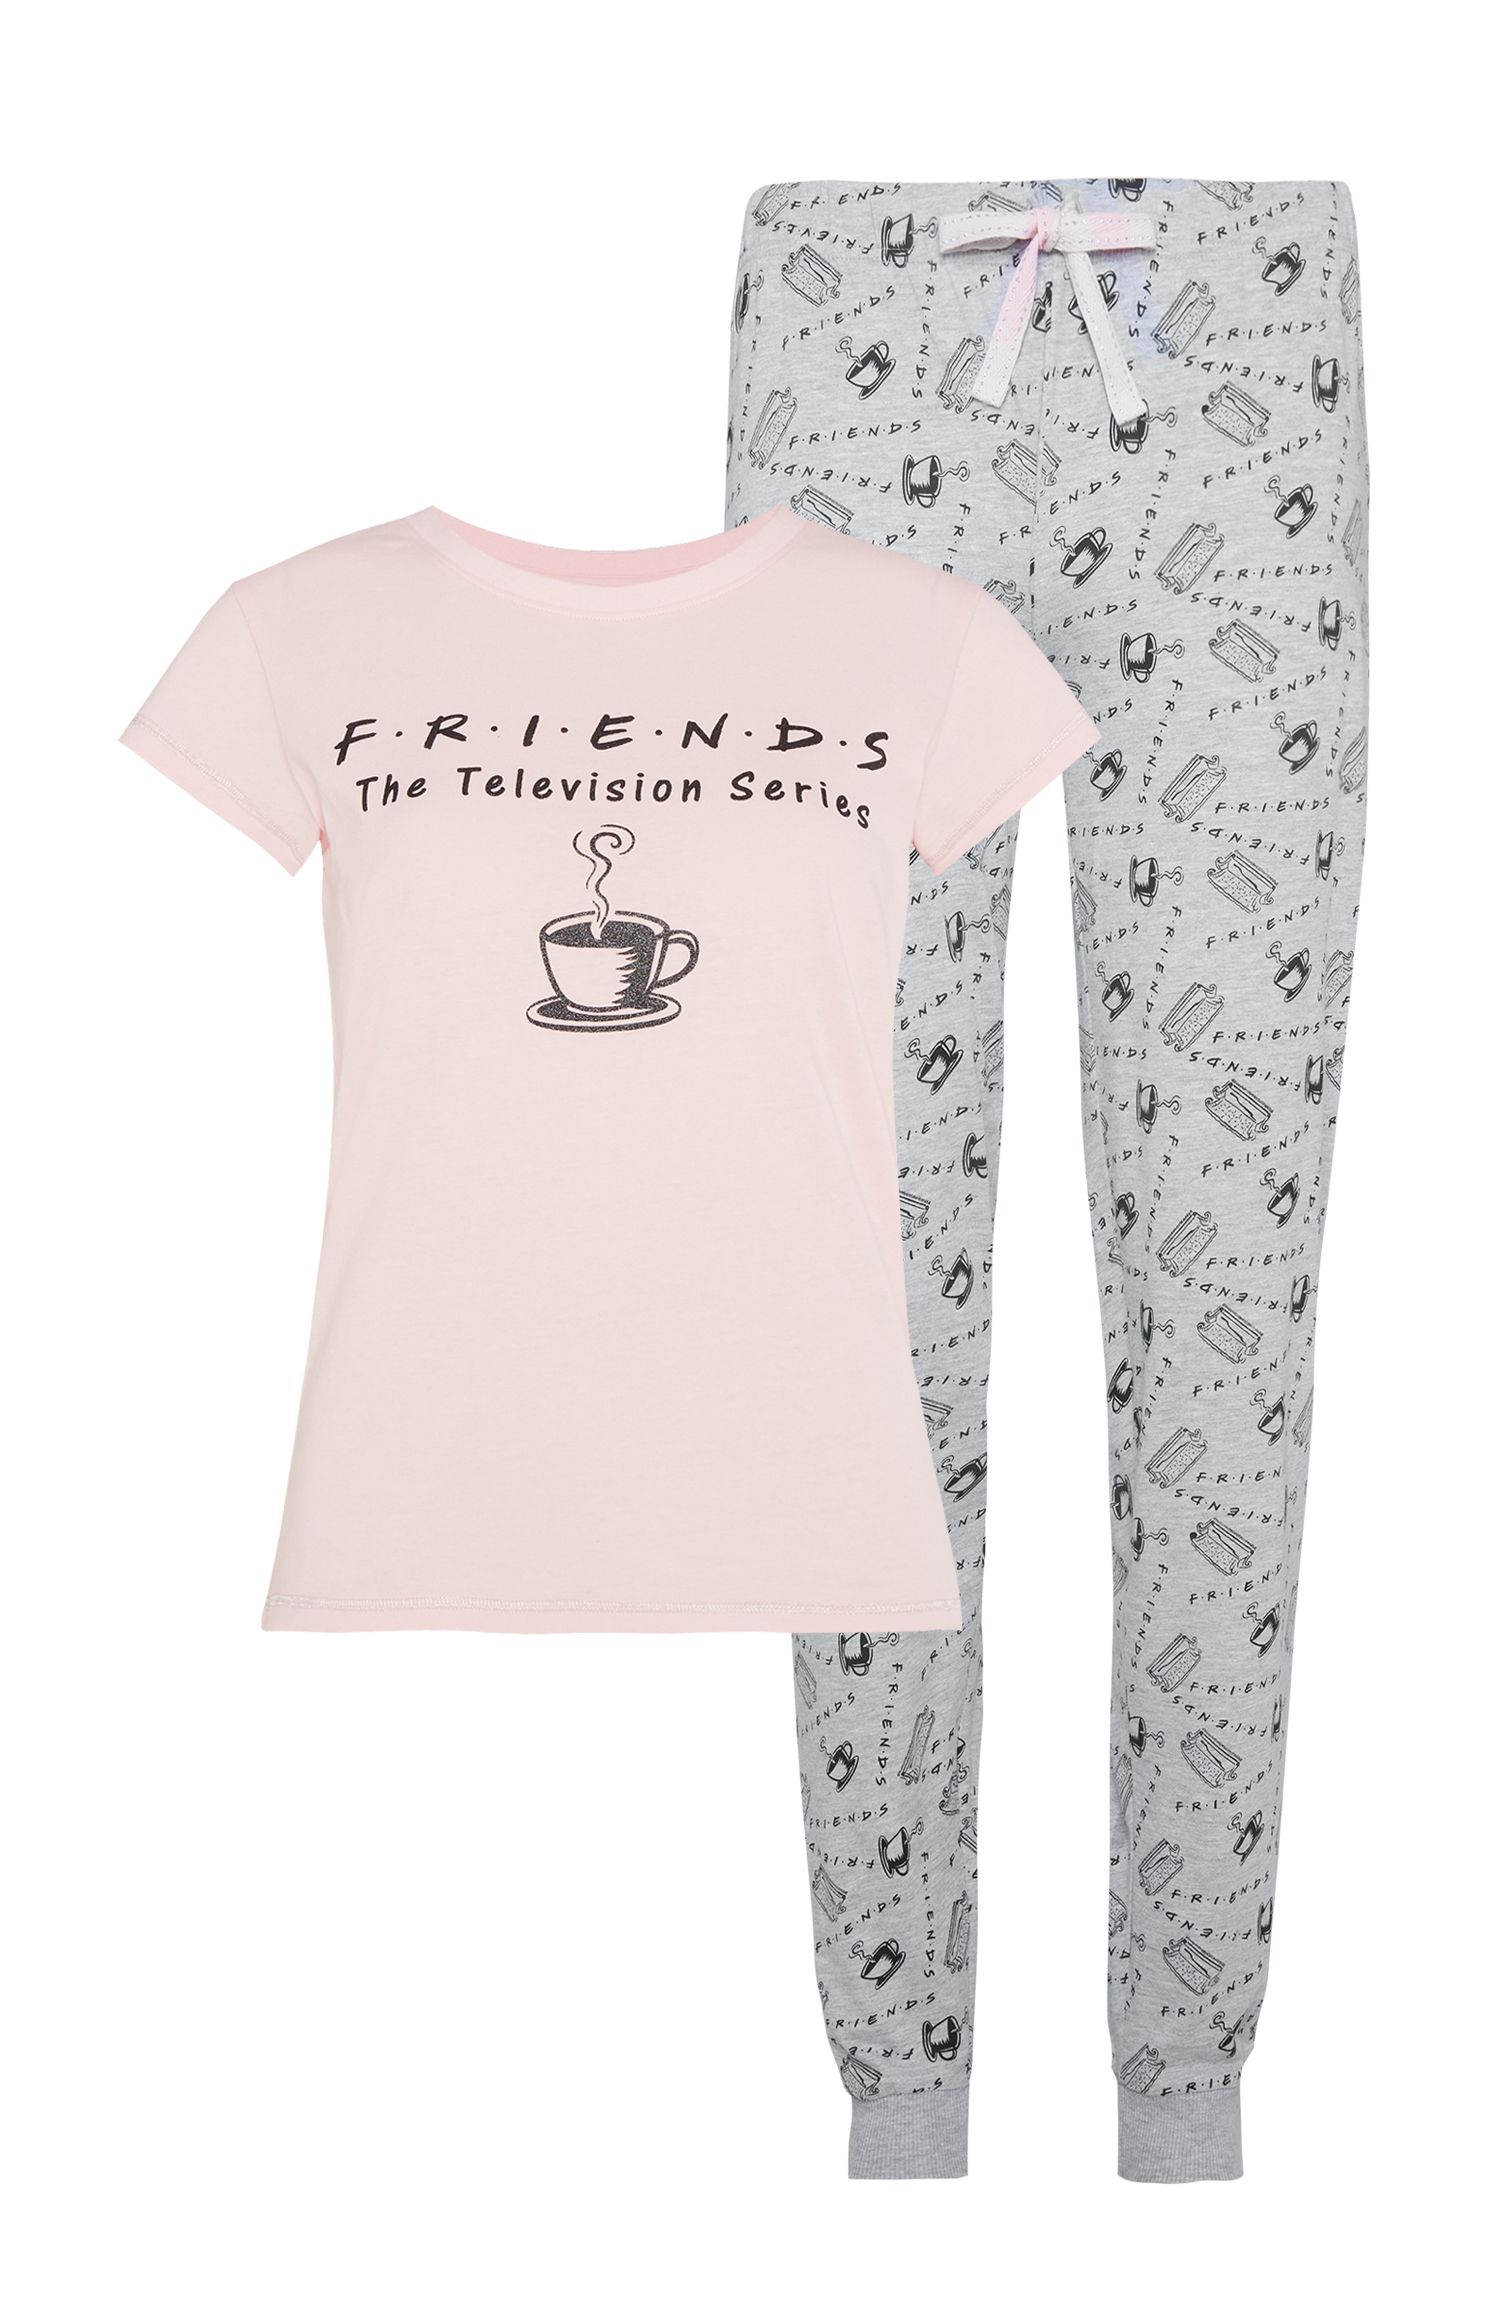 Пижама друзья. Primark пижама Гардилд. Primark Cares пижама женская. Friends пижама женская.